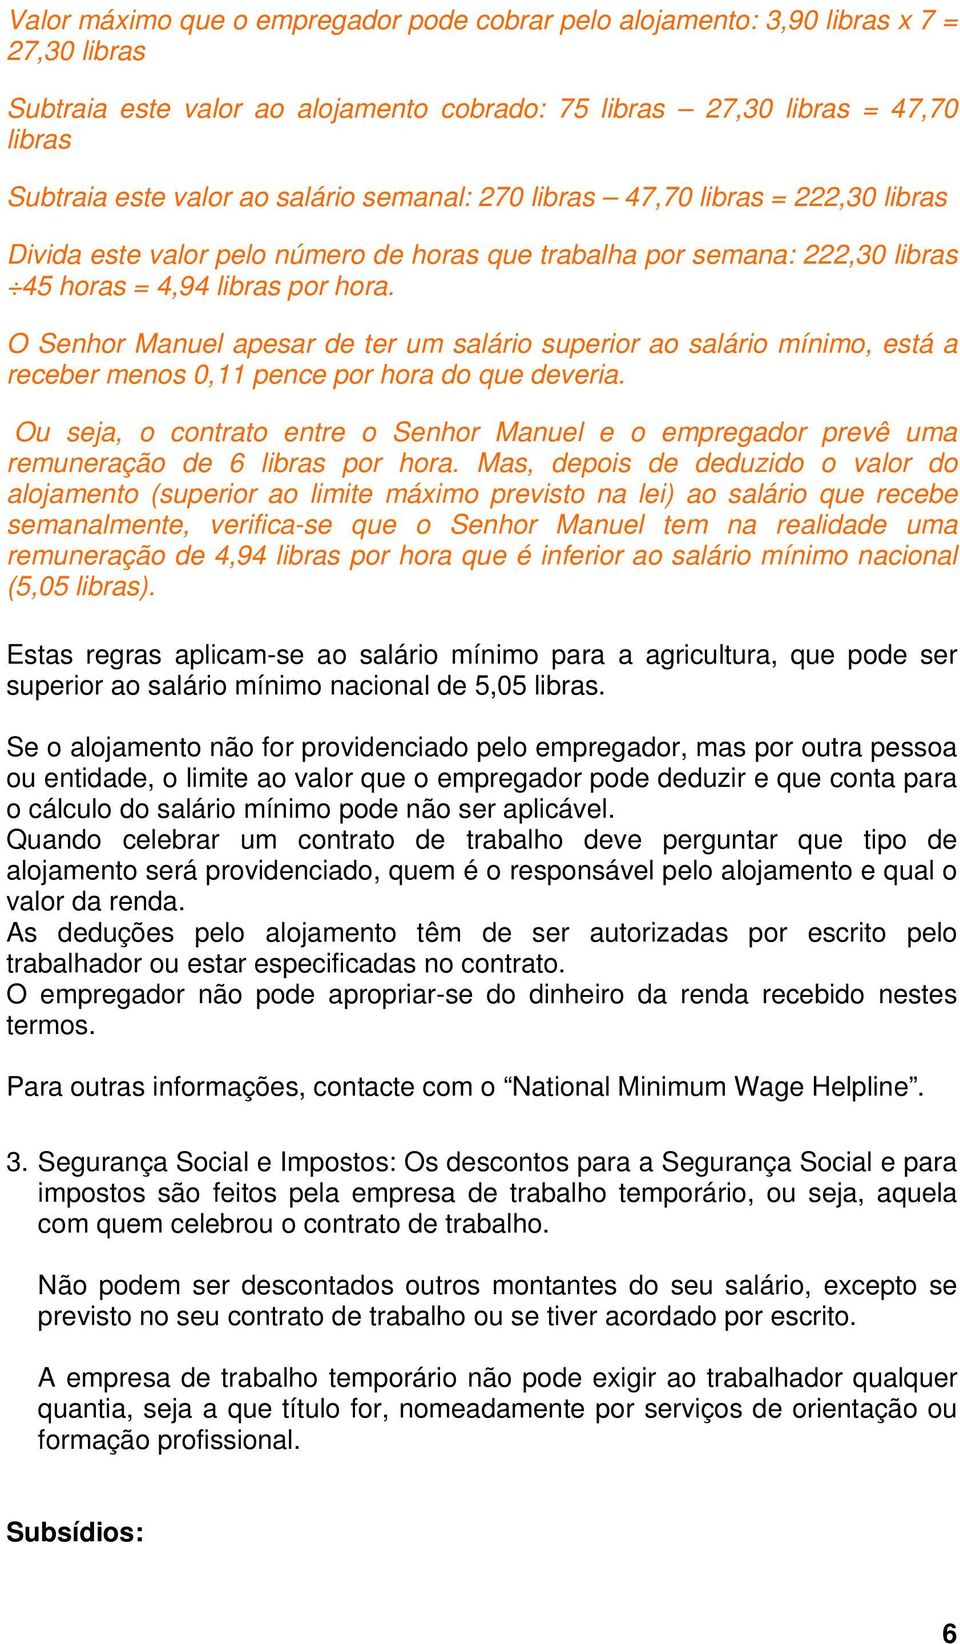 O Senhor Manuel apesar de ter um salário superior ao salário mínimo, está a receber menos 0,11 pence por hora do que deveria.